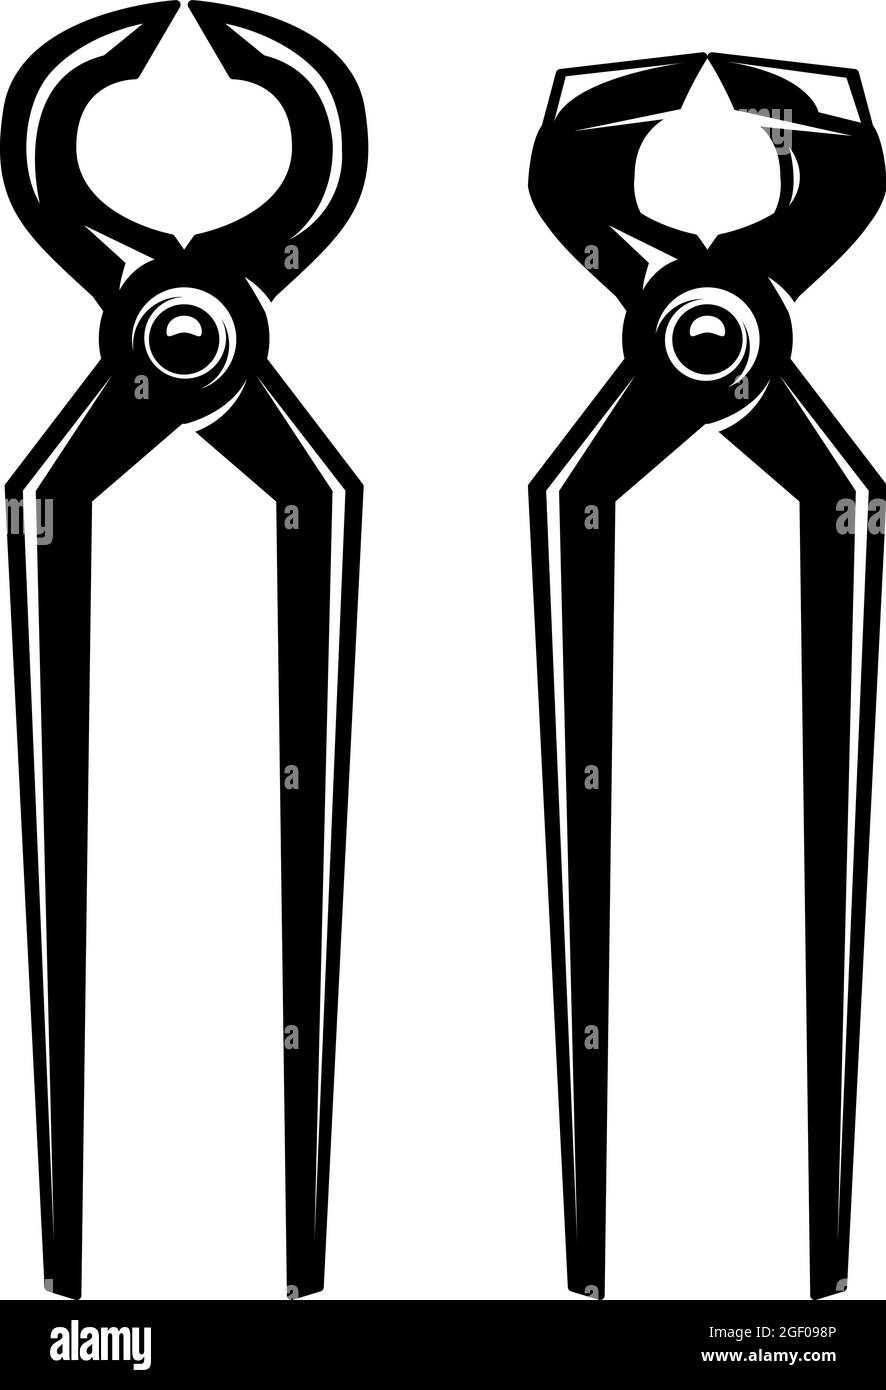 Illustration of blacksmith pliers. Design element for logo, label, sign, emblem, poster. Vector illustration Stock Vector